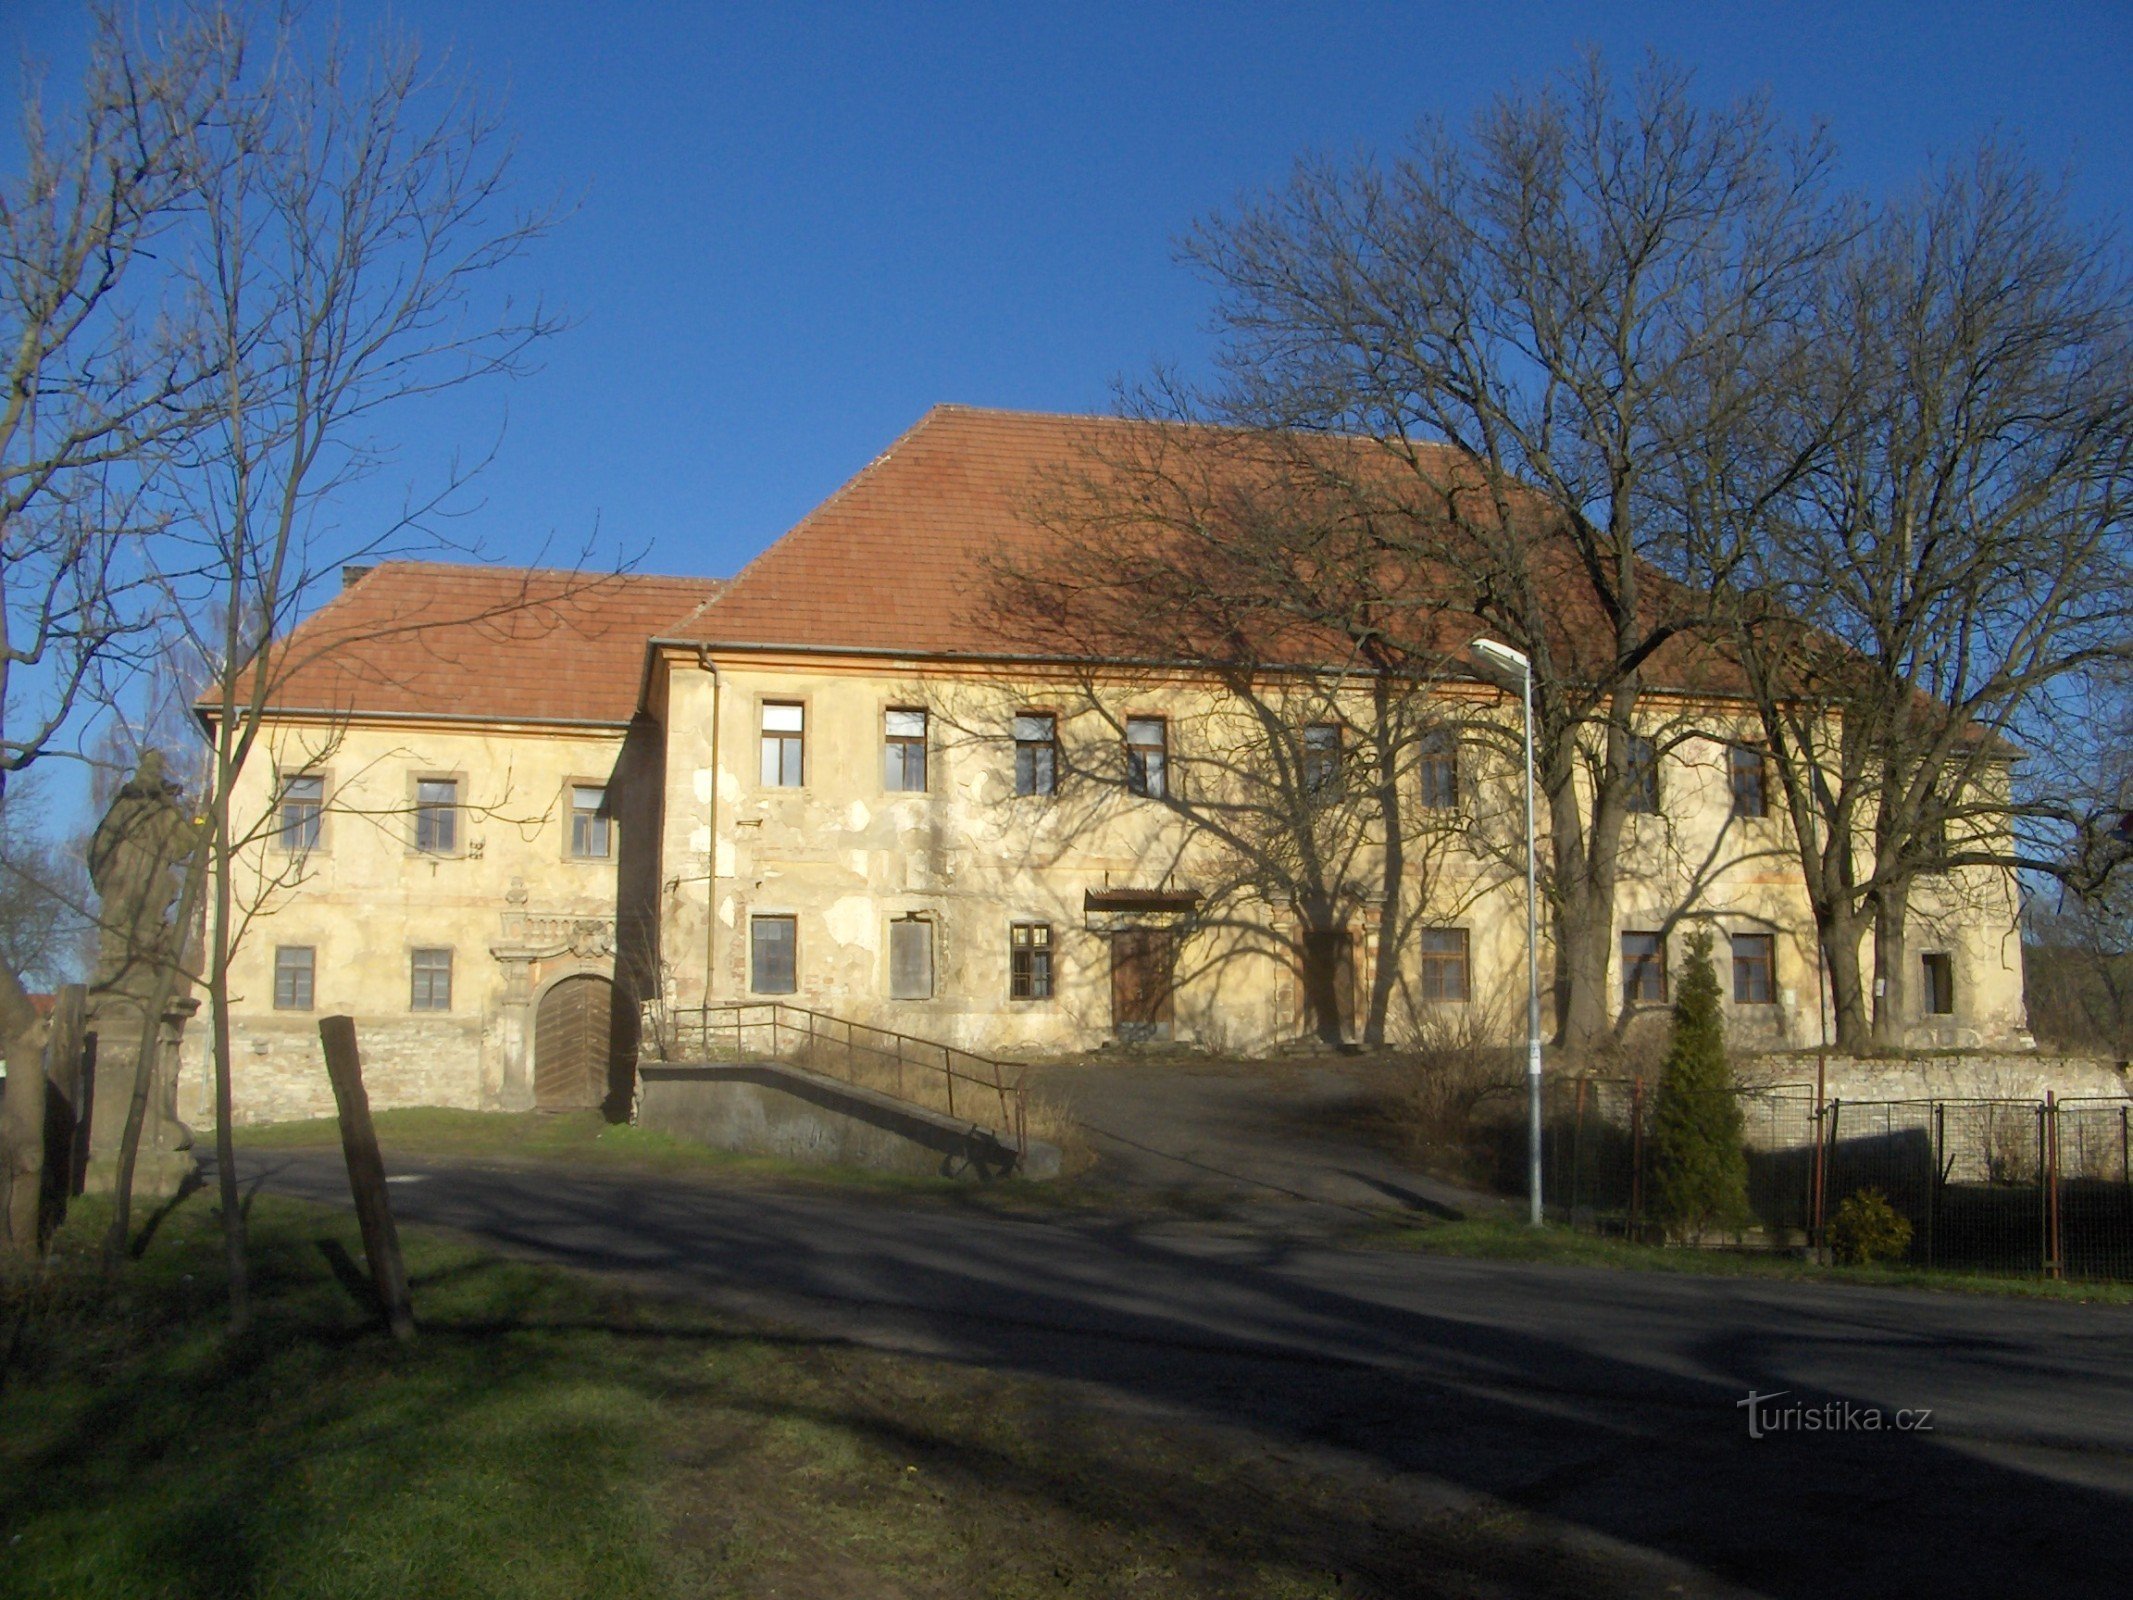 Κάστρο Záhorany.